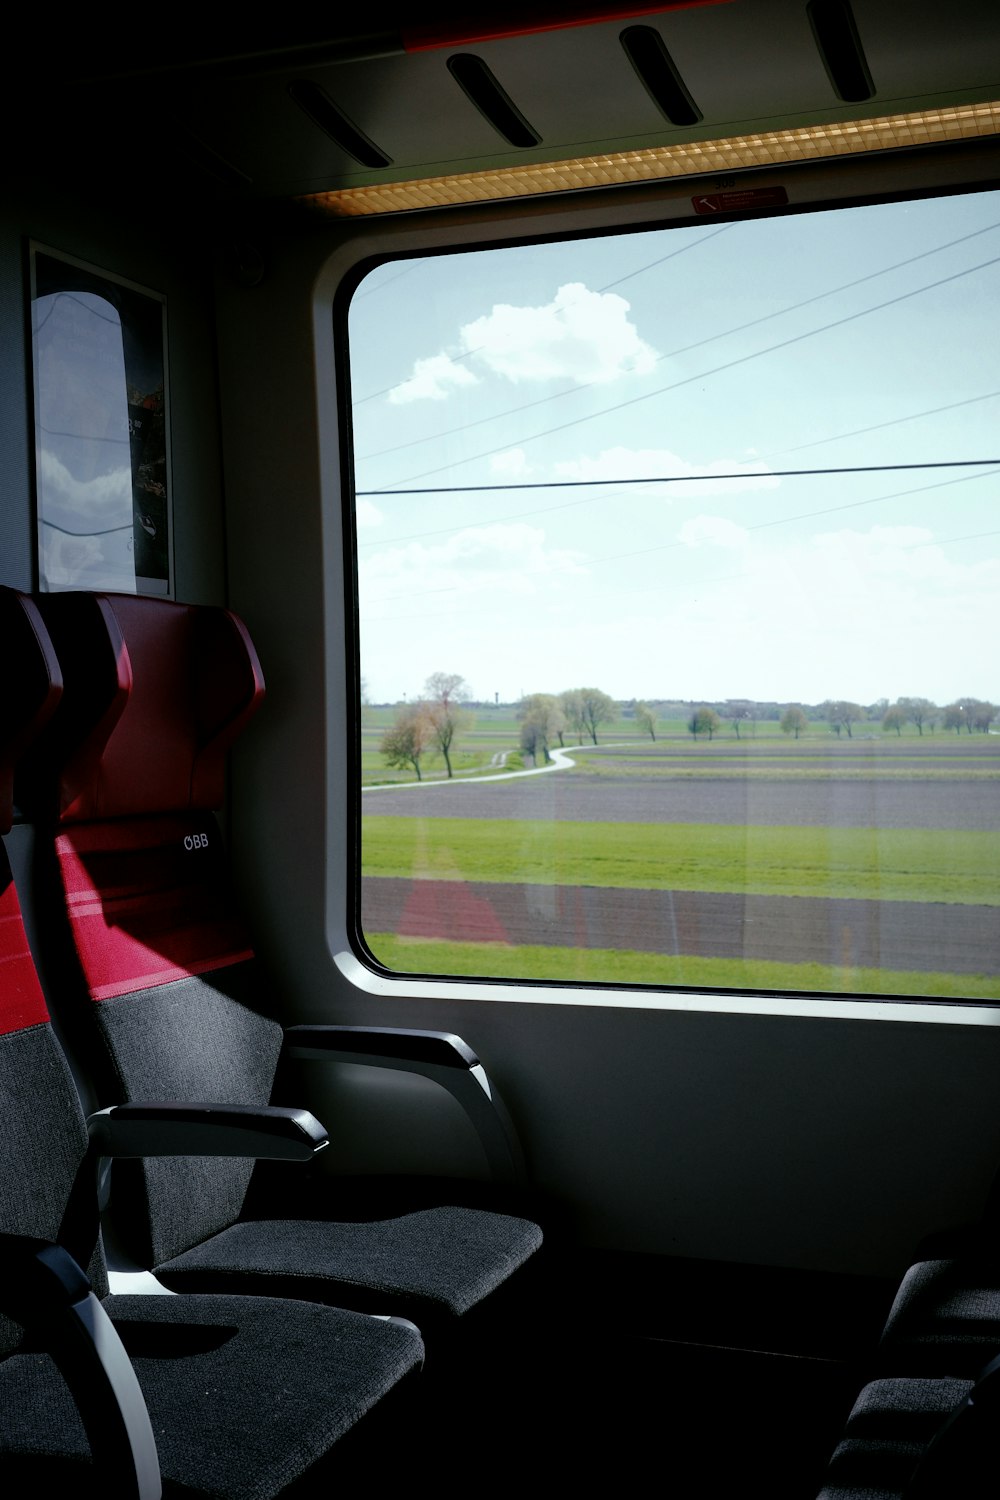 a view of a field through a train window